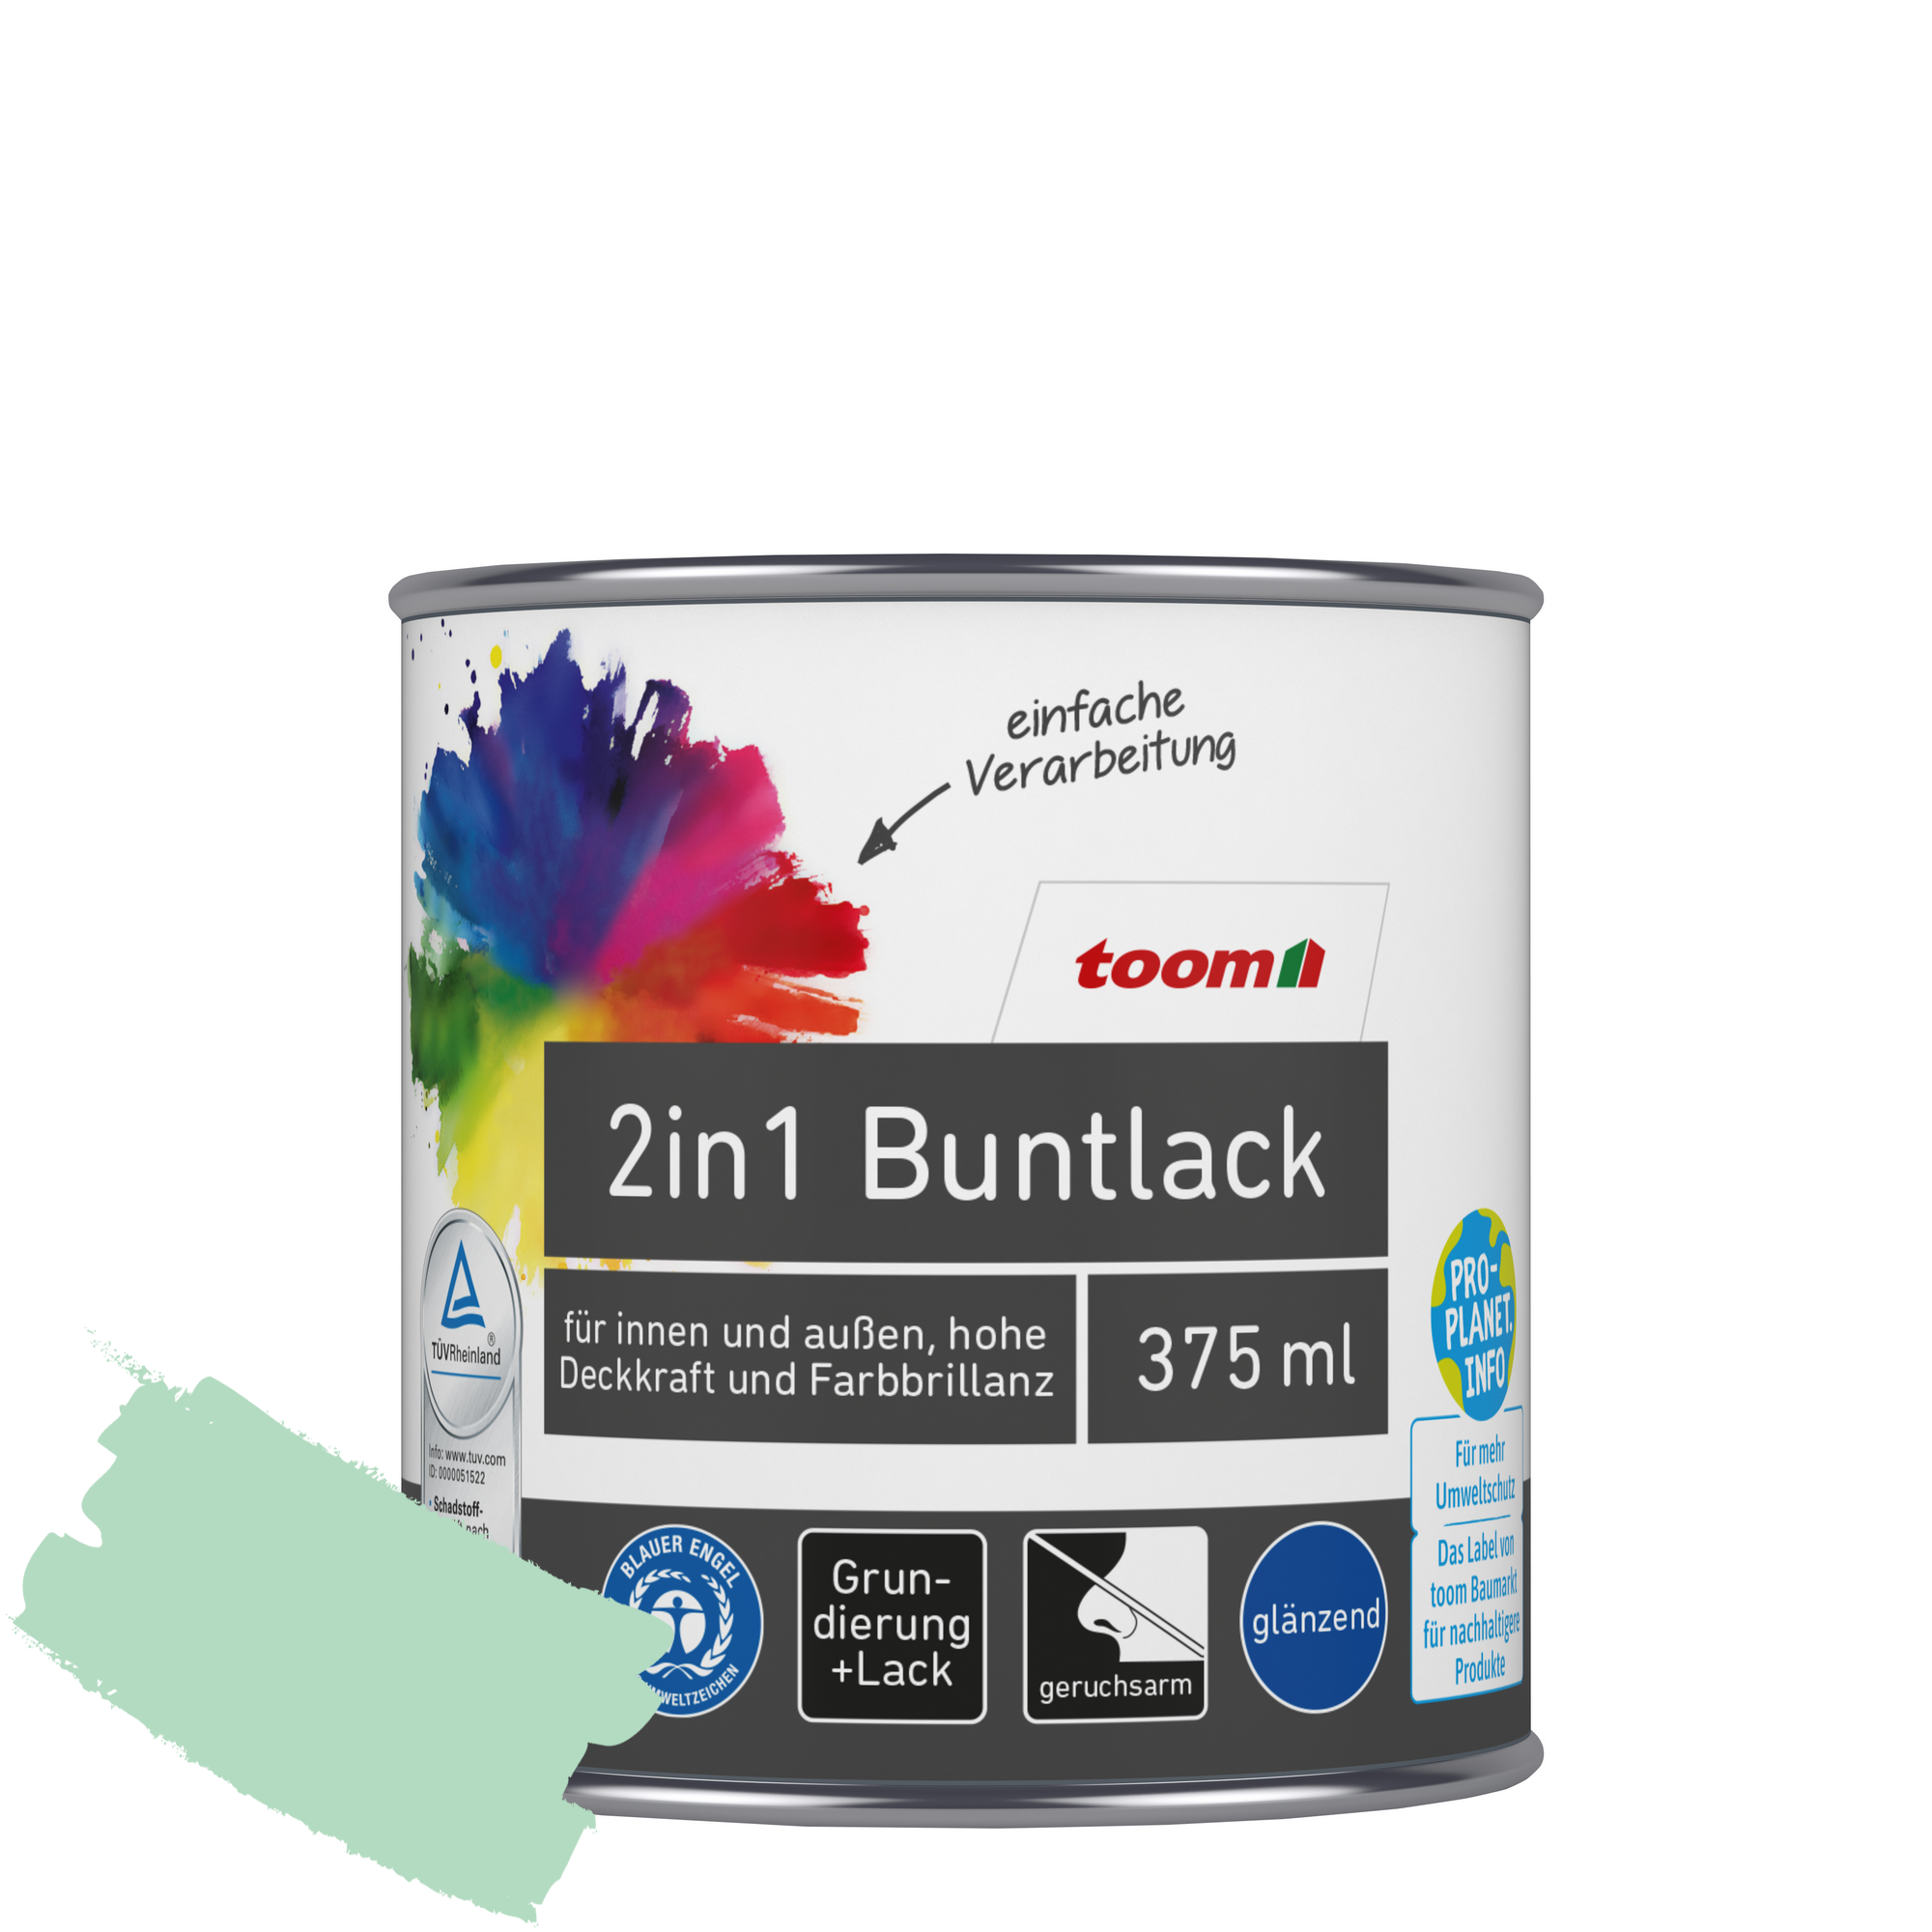 2in1 Buntlack minzgrün glänzend 375 ml + product picture